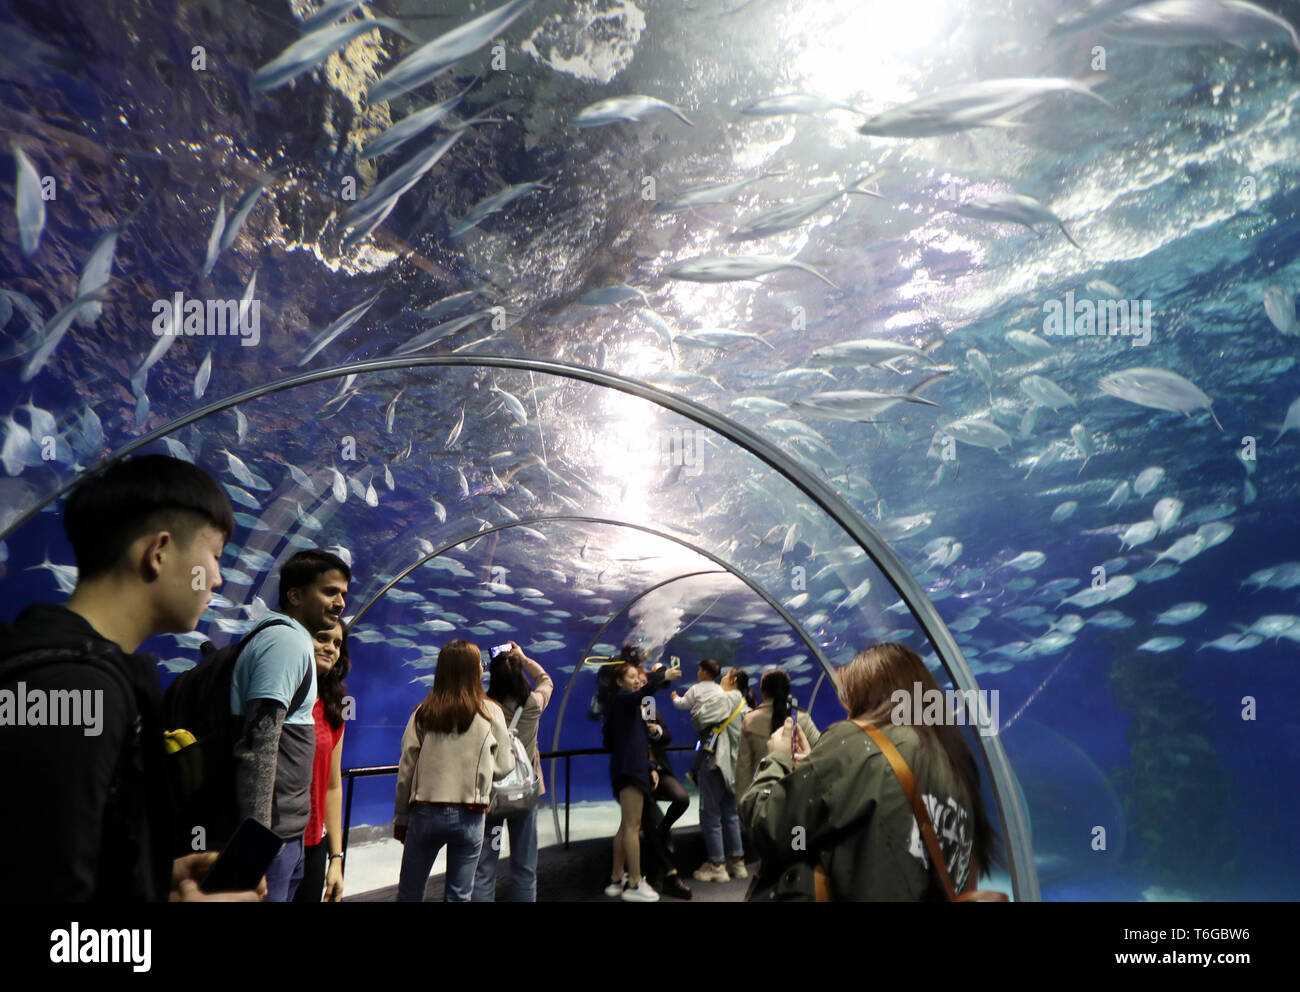 (190501) -- SHANGHAI, le 1 mai, 2019 (Xinhua) -- Les touristes visiter l'aquarium Ocean Shanghai dans l'est de la Chine, Shanghai, le 1 mai 2019. Le tourisme stimule autant de gens sortent pour des activités de loisirs durant les quatre jours de la Fête du travail fête nationale. (Xinhua/Liu Ying) Banque D'Images